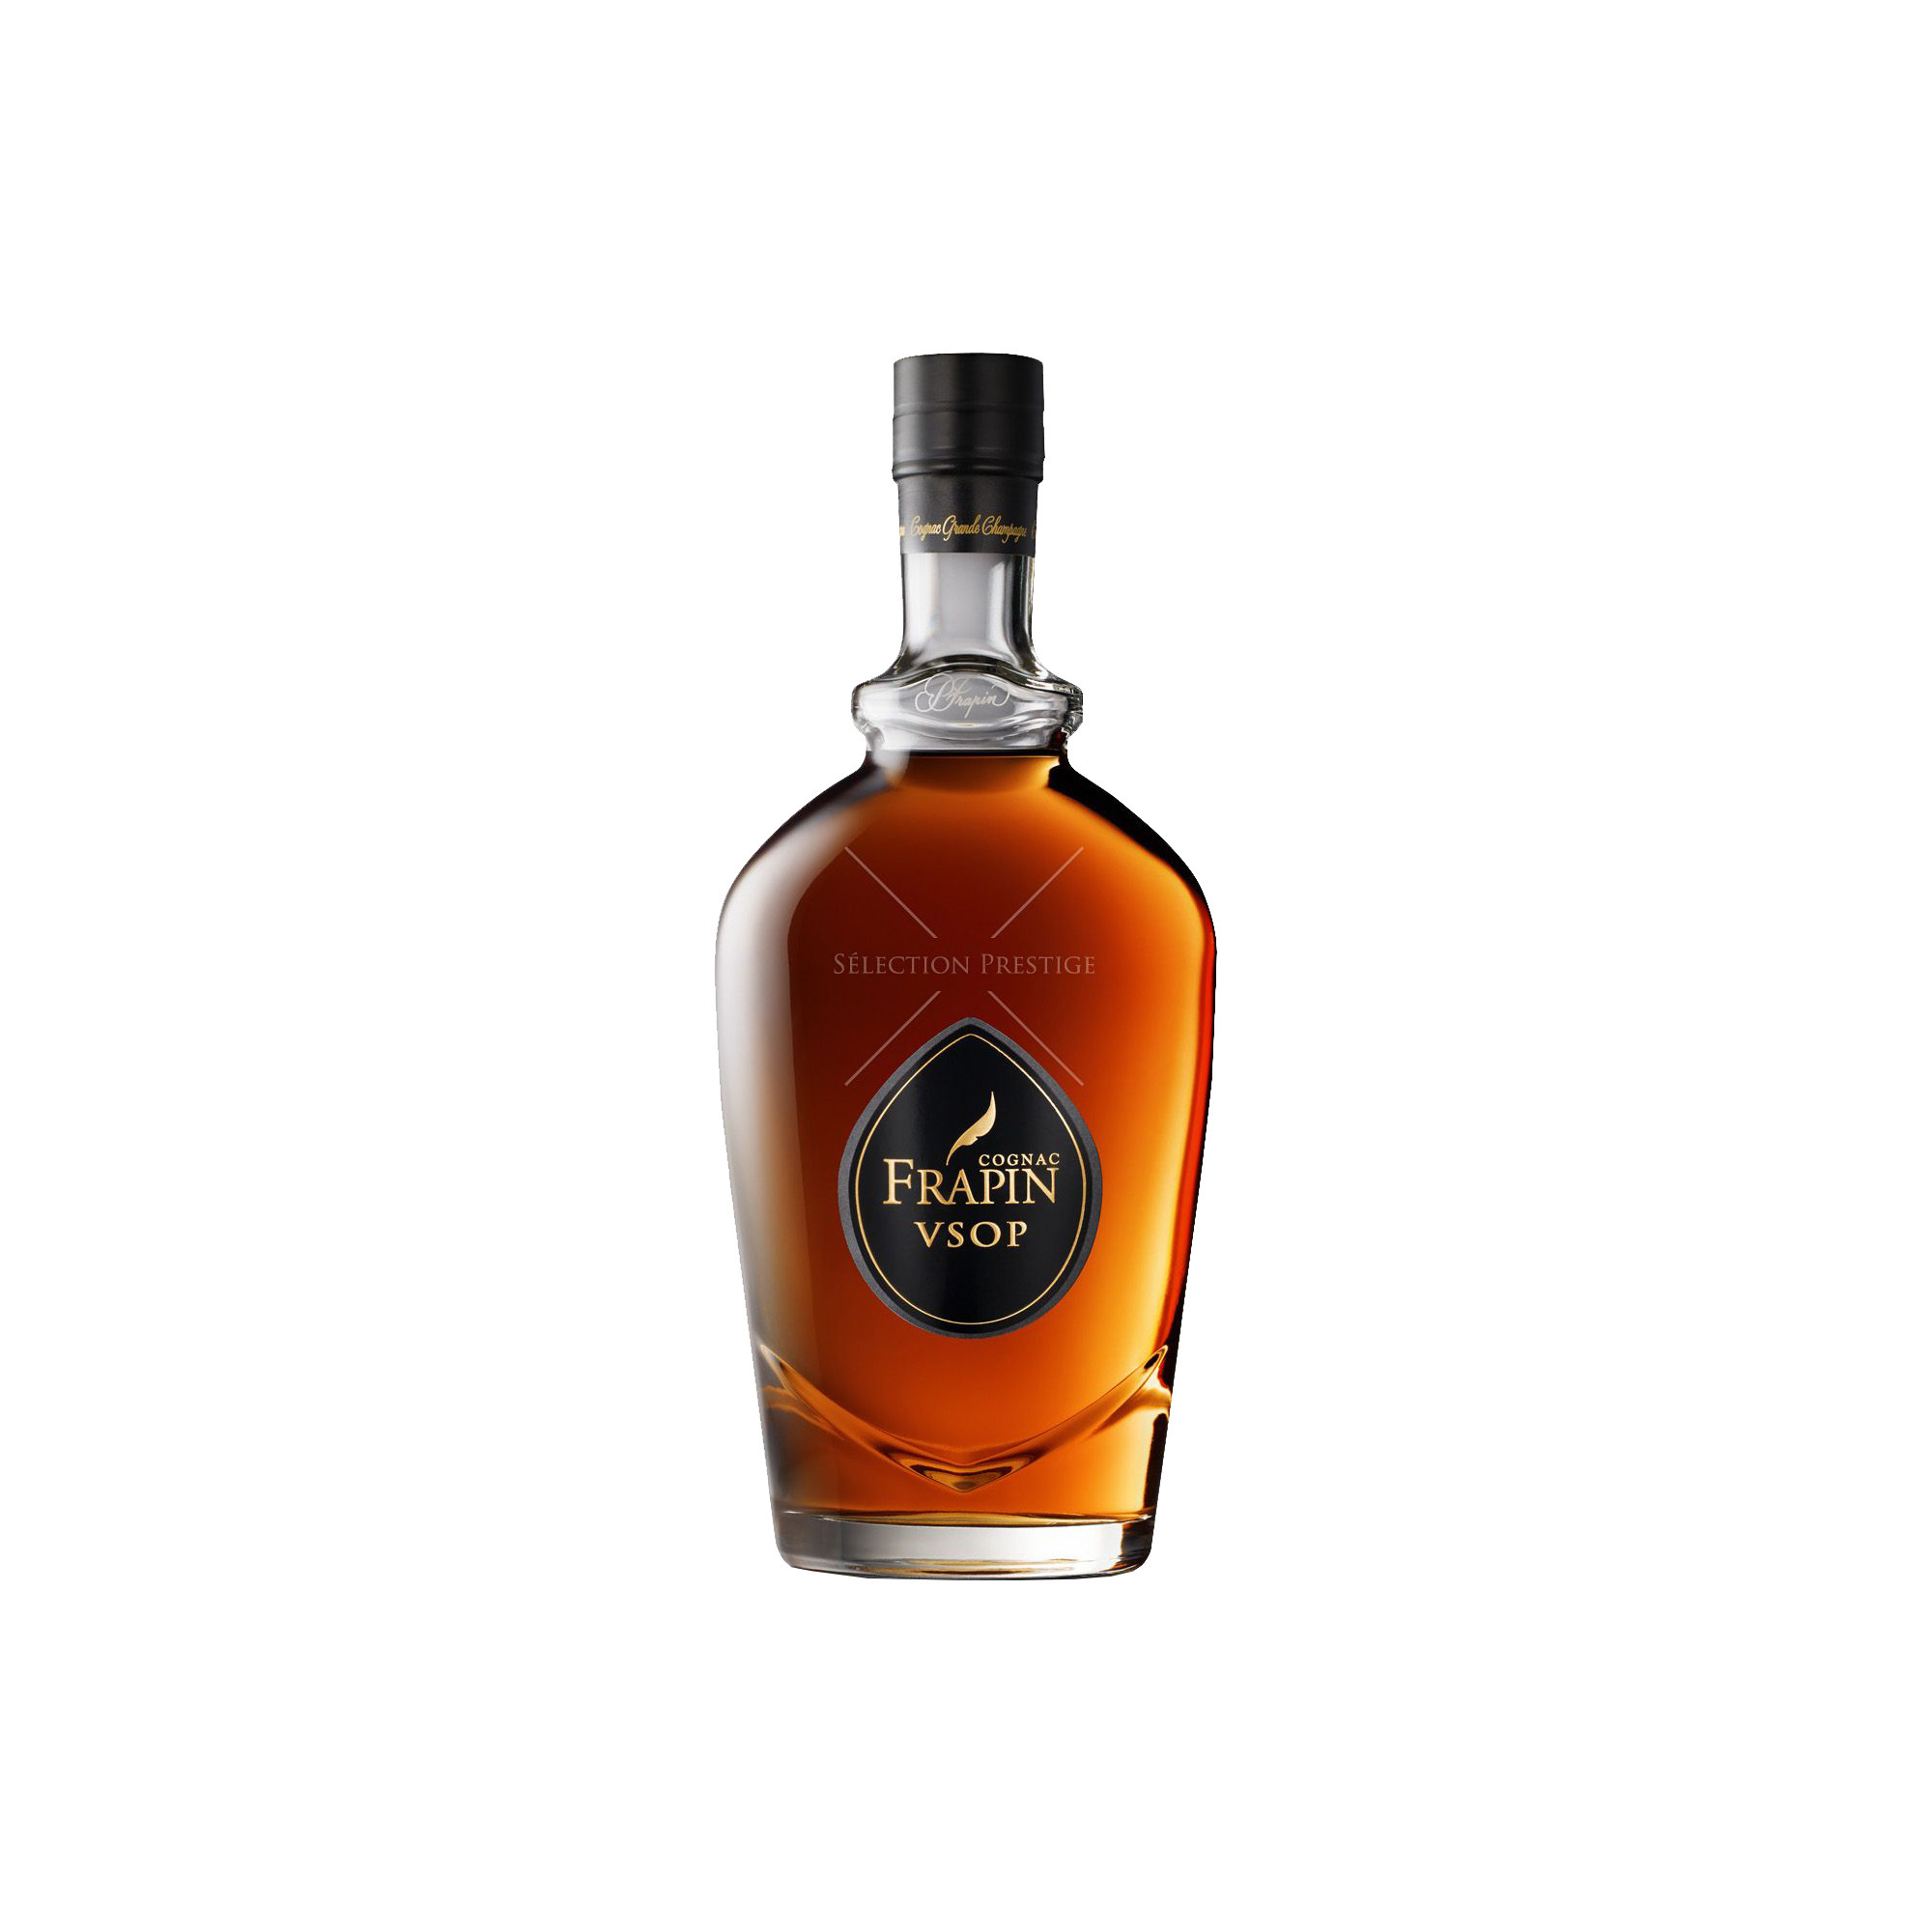 Frapin VSOP Cognac 0,7l